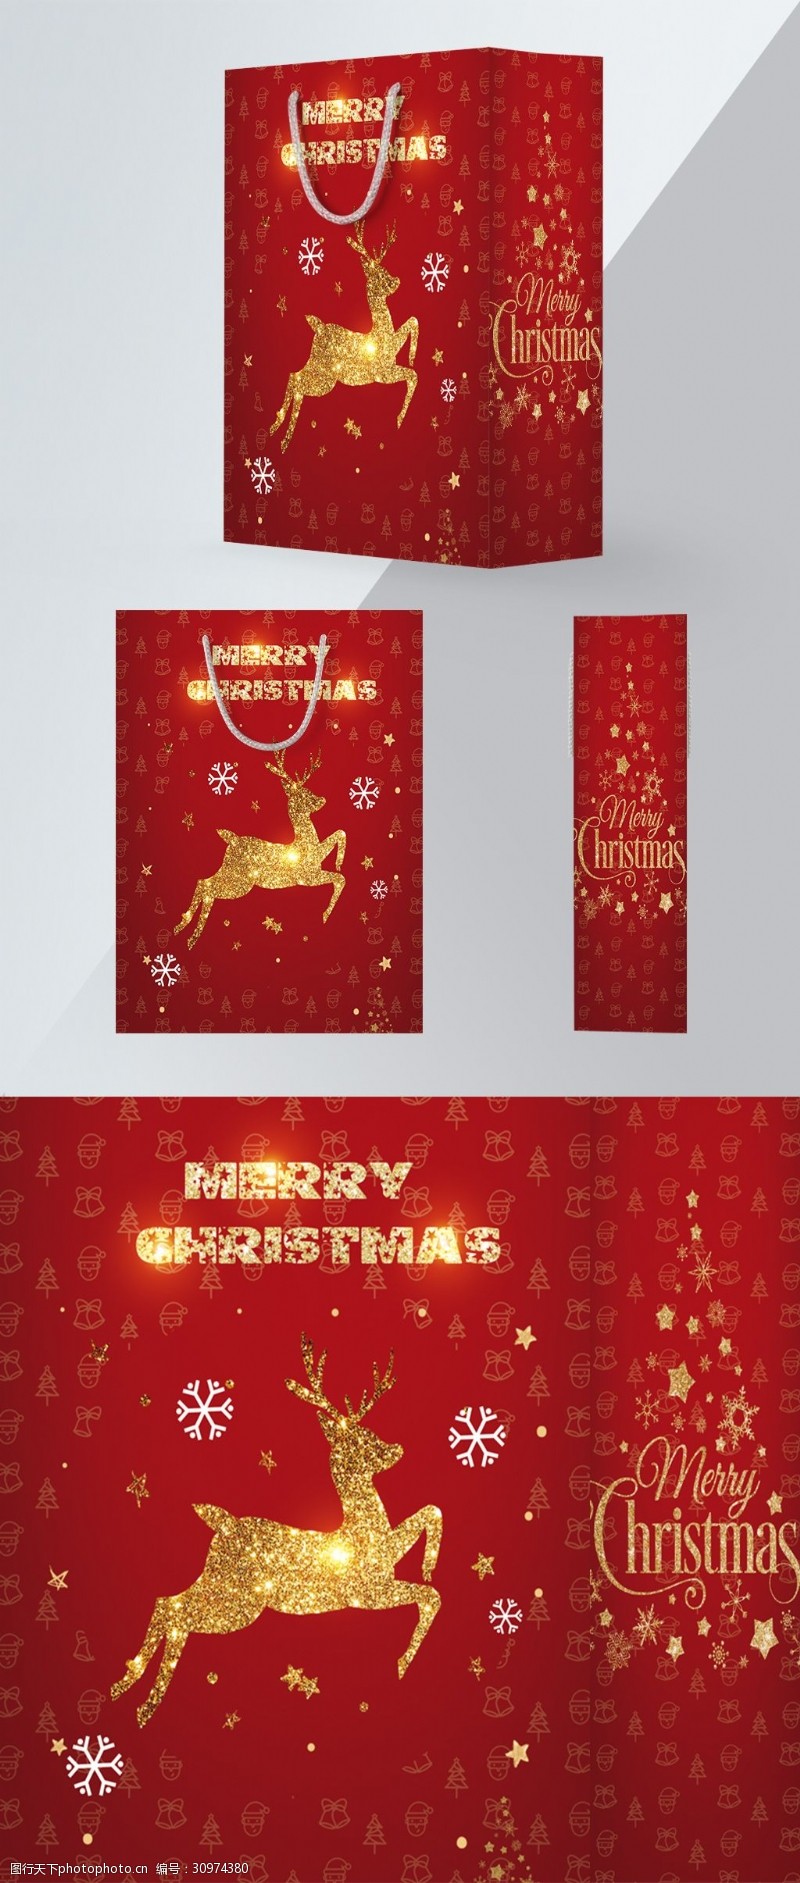 金色铃铛红色喜庆圣诞节手提袋